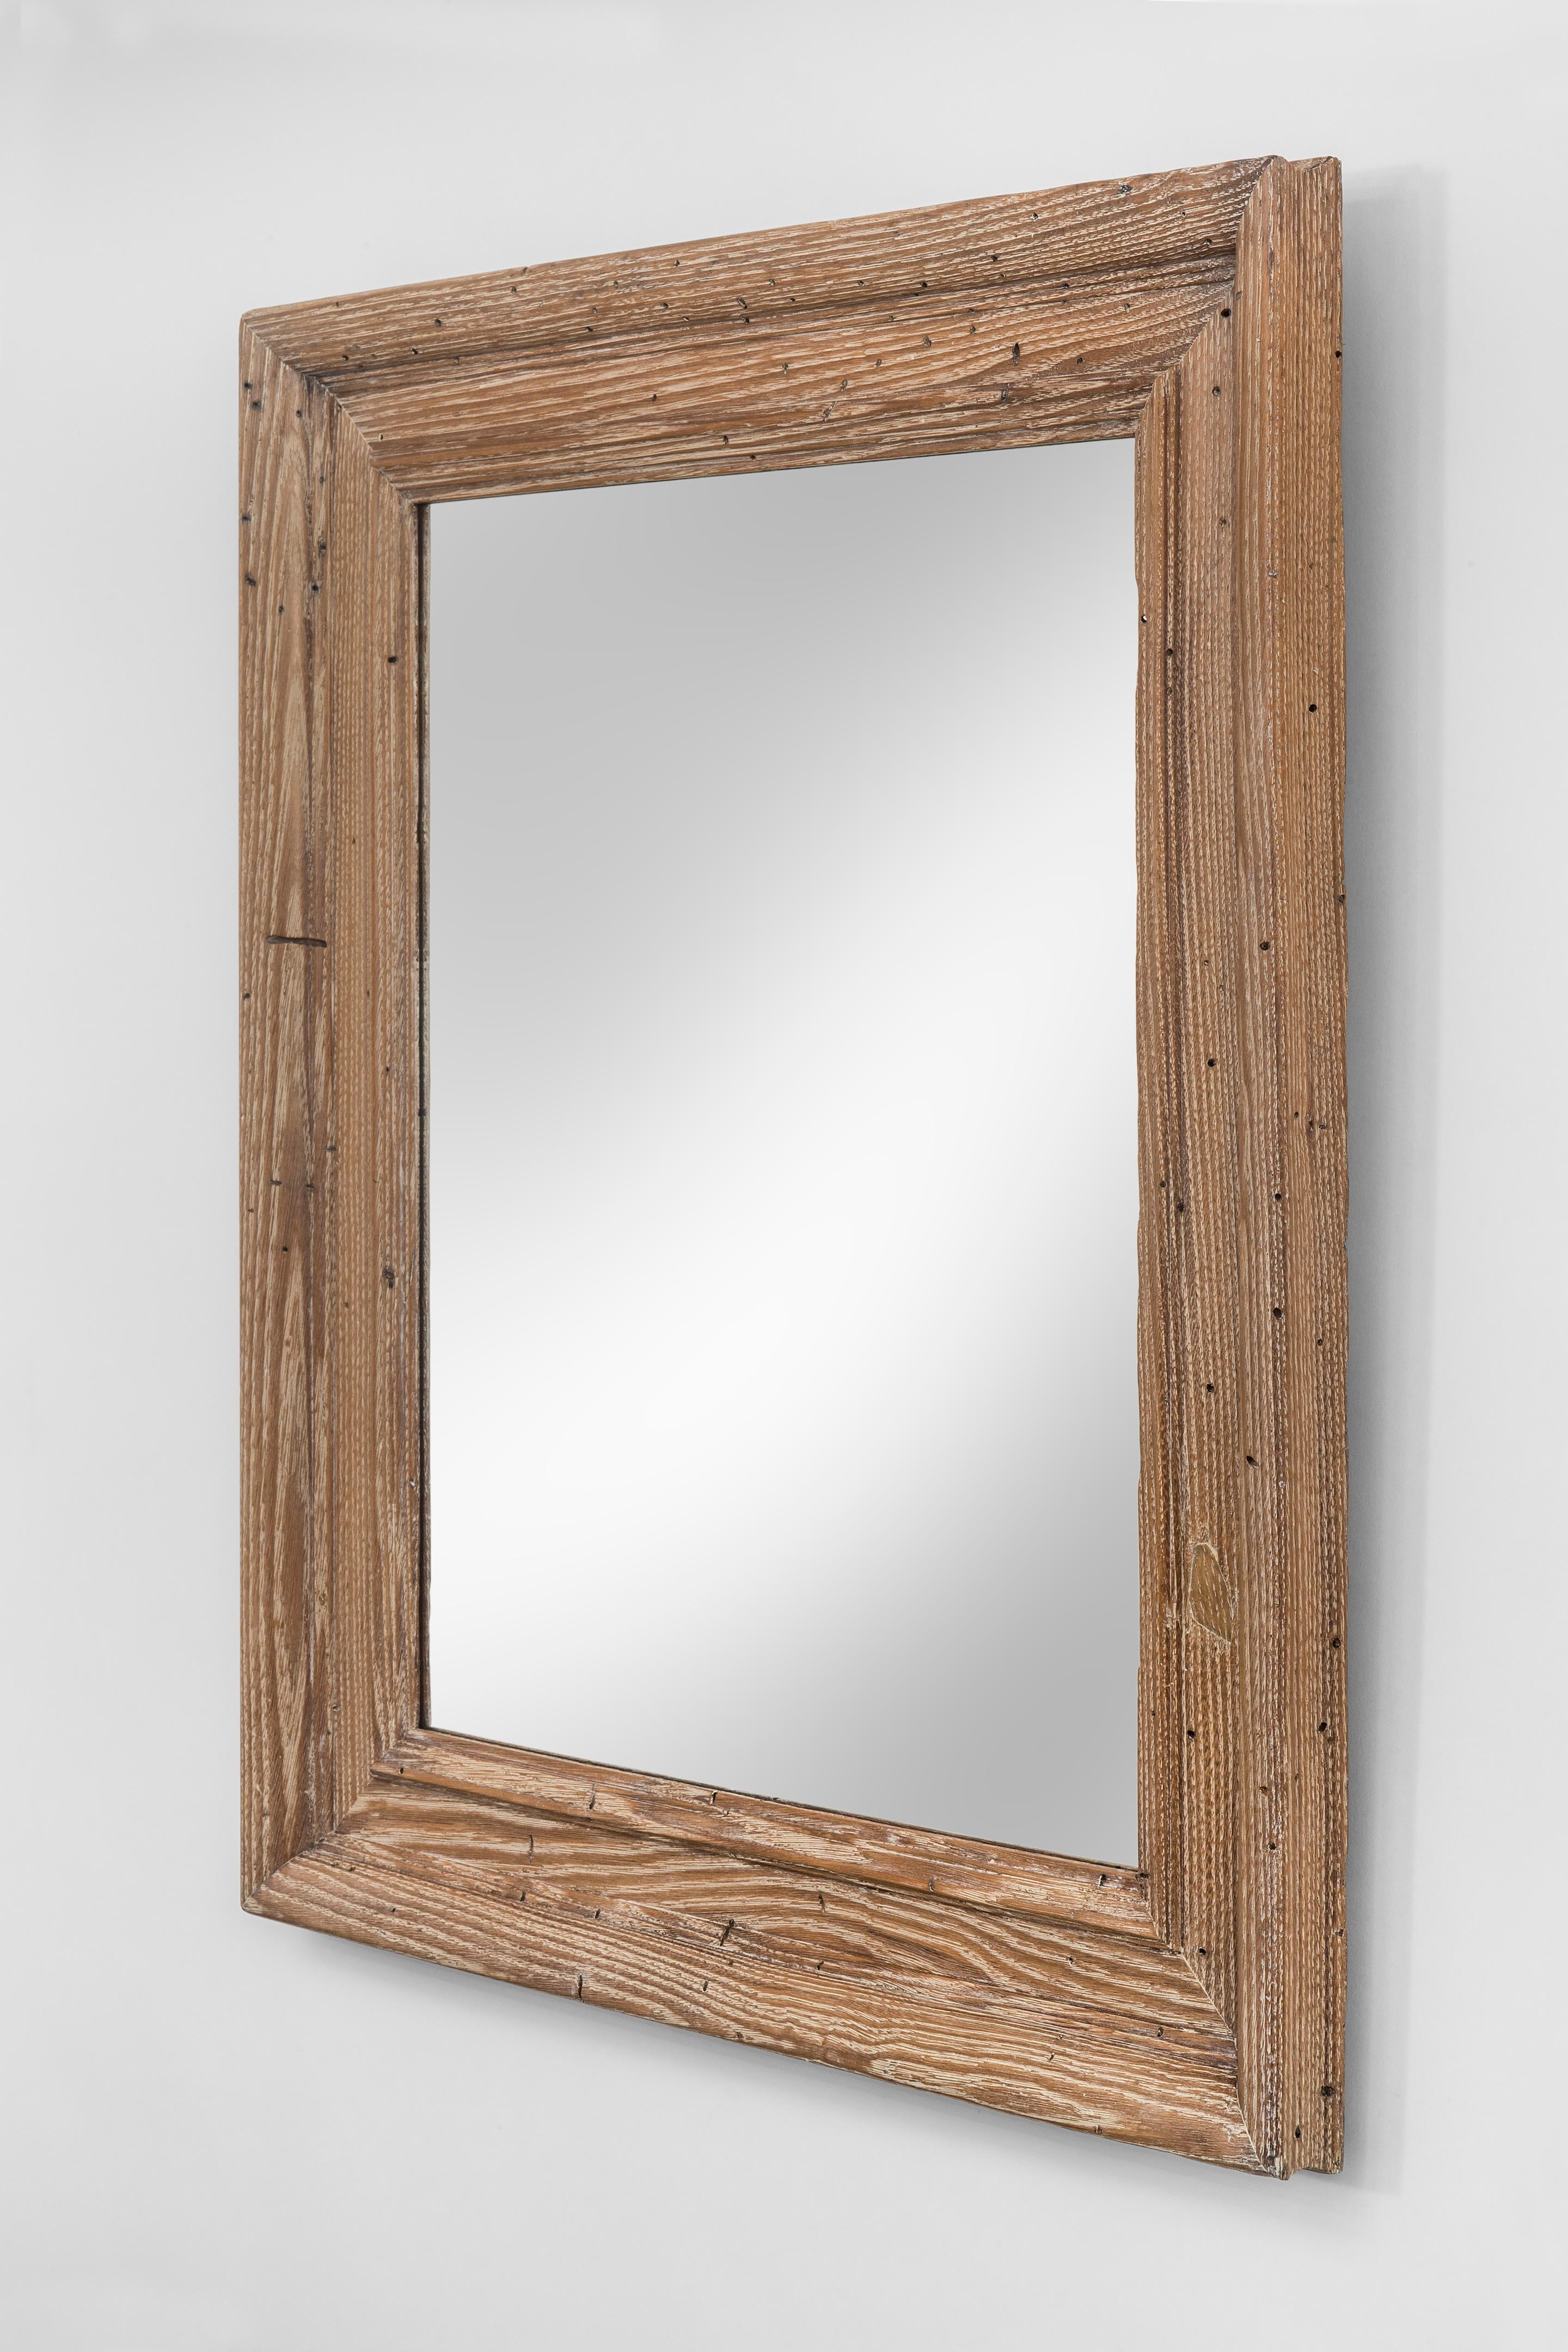 timber framed mirror